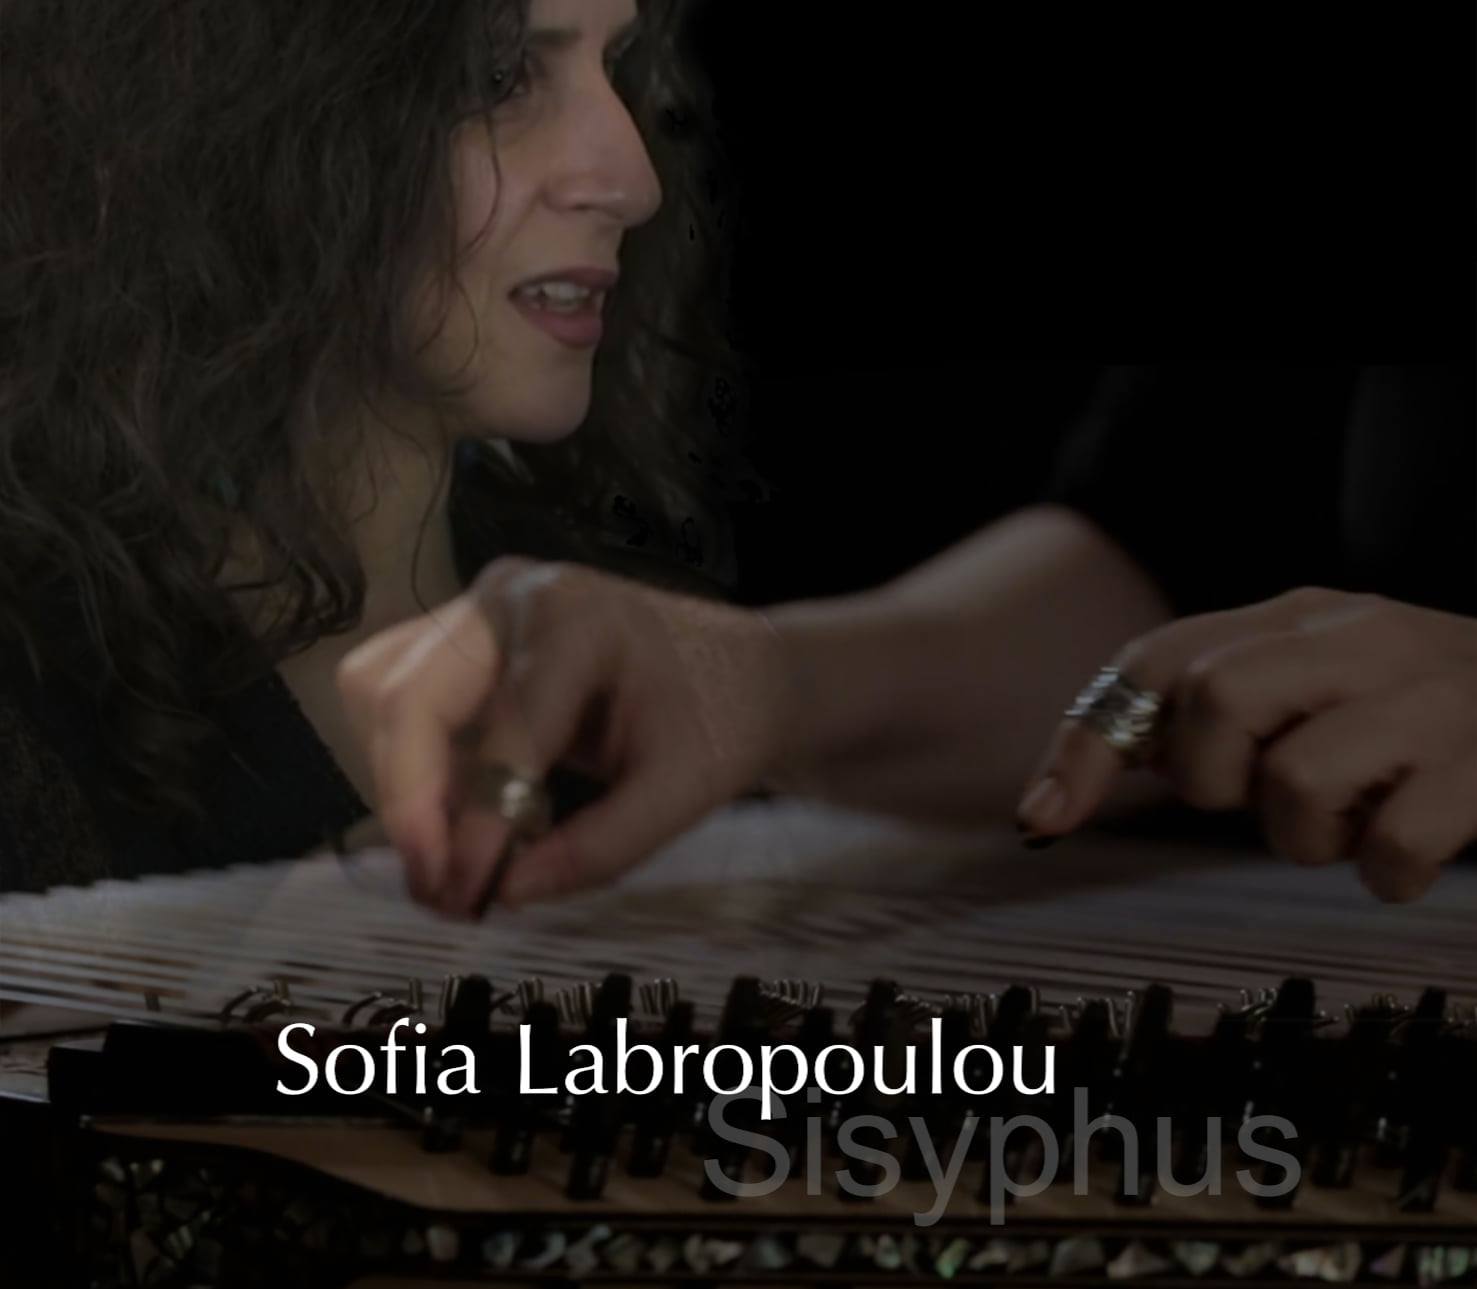 Sofia Labropoulou